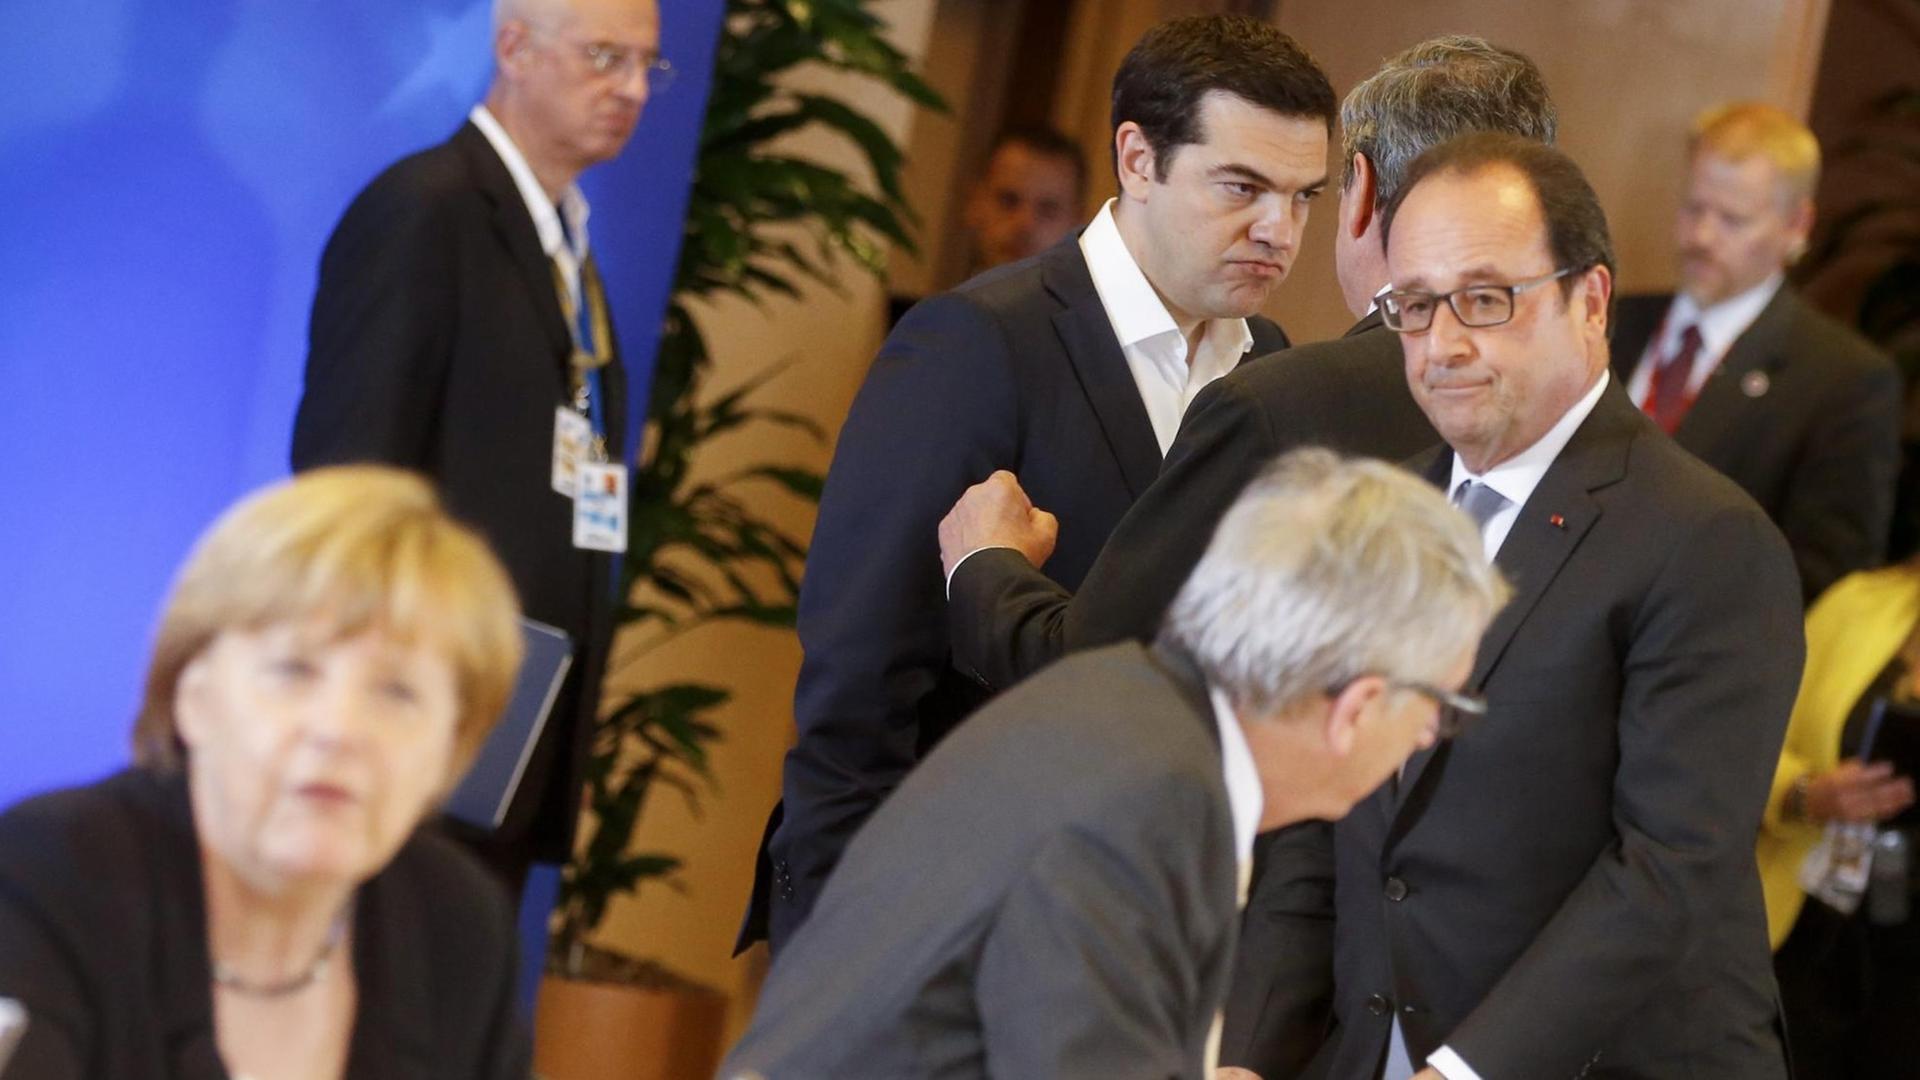 Die EU-Staats- und Regierungschefs - darunter Kanzlerin Merkel, Frankeichs Präsident Hollande und der griechische Ministerpräsident Tsipras - beraten auf ihrem Sondergipfel in Brüssel.